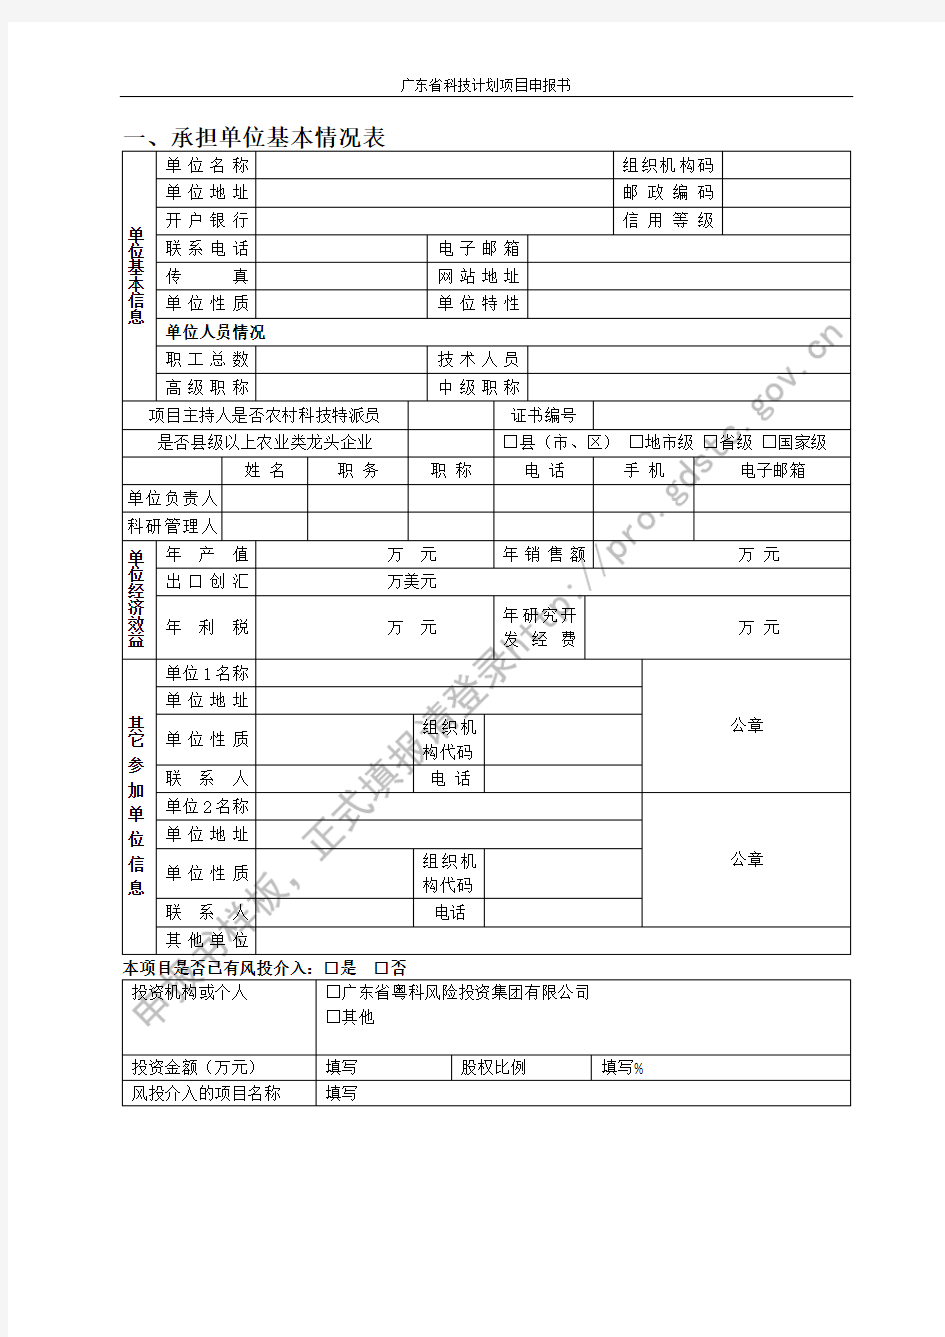 广东省科技计划项目申报书_18805